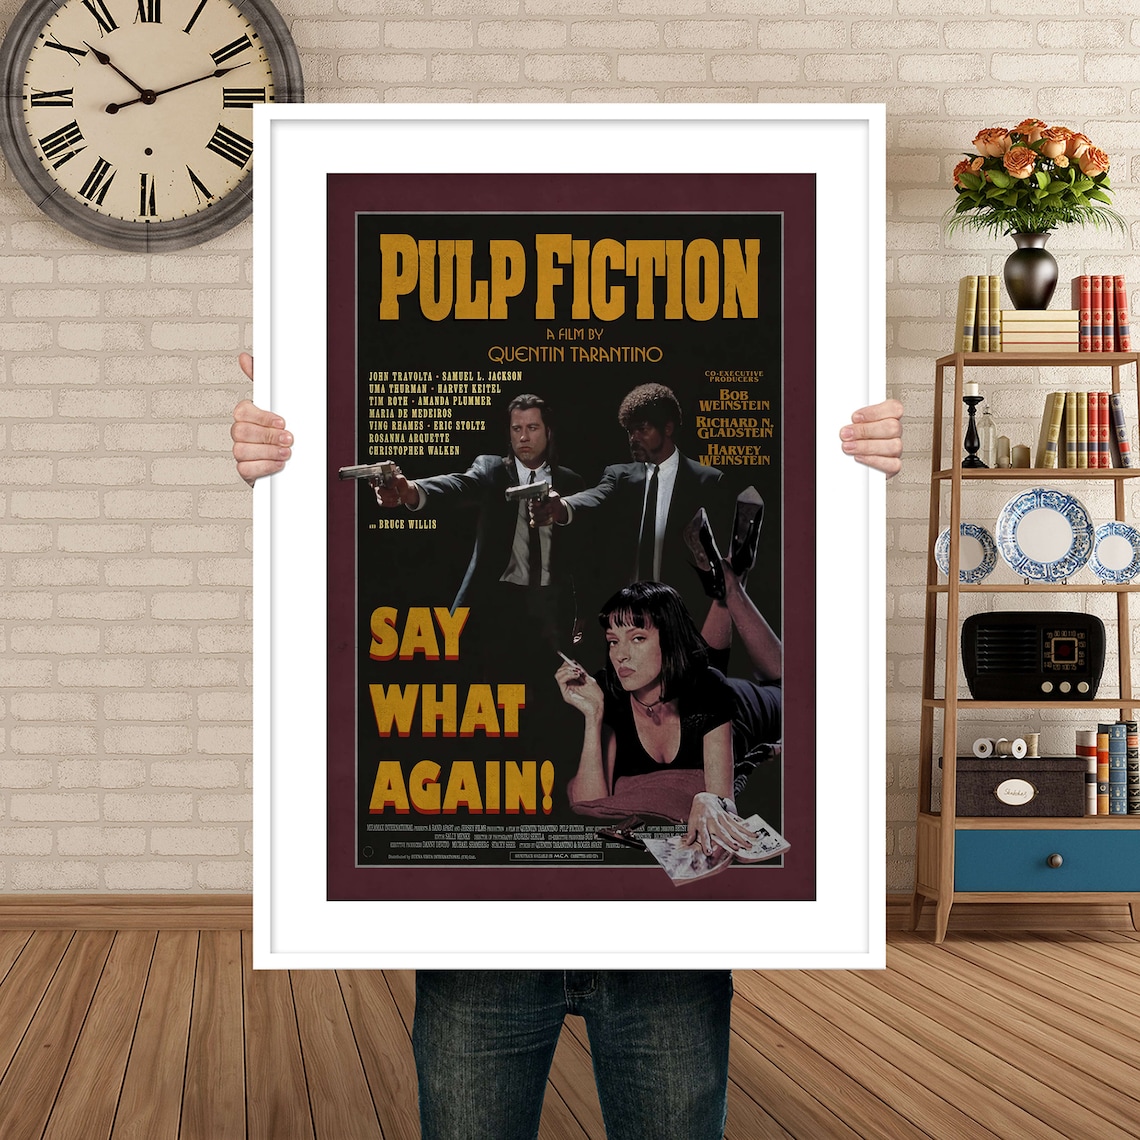  Pulp  Fiction  Affiches  de films R tro Poster Styles Print 